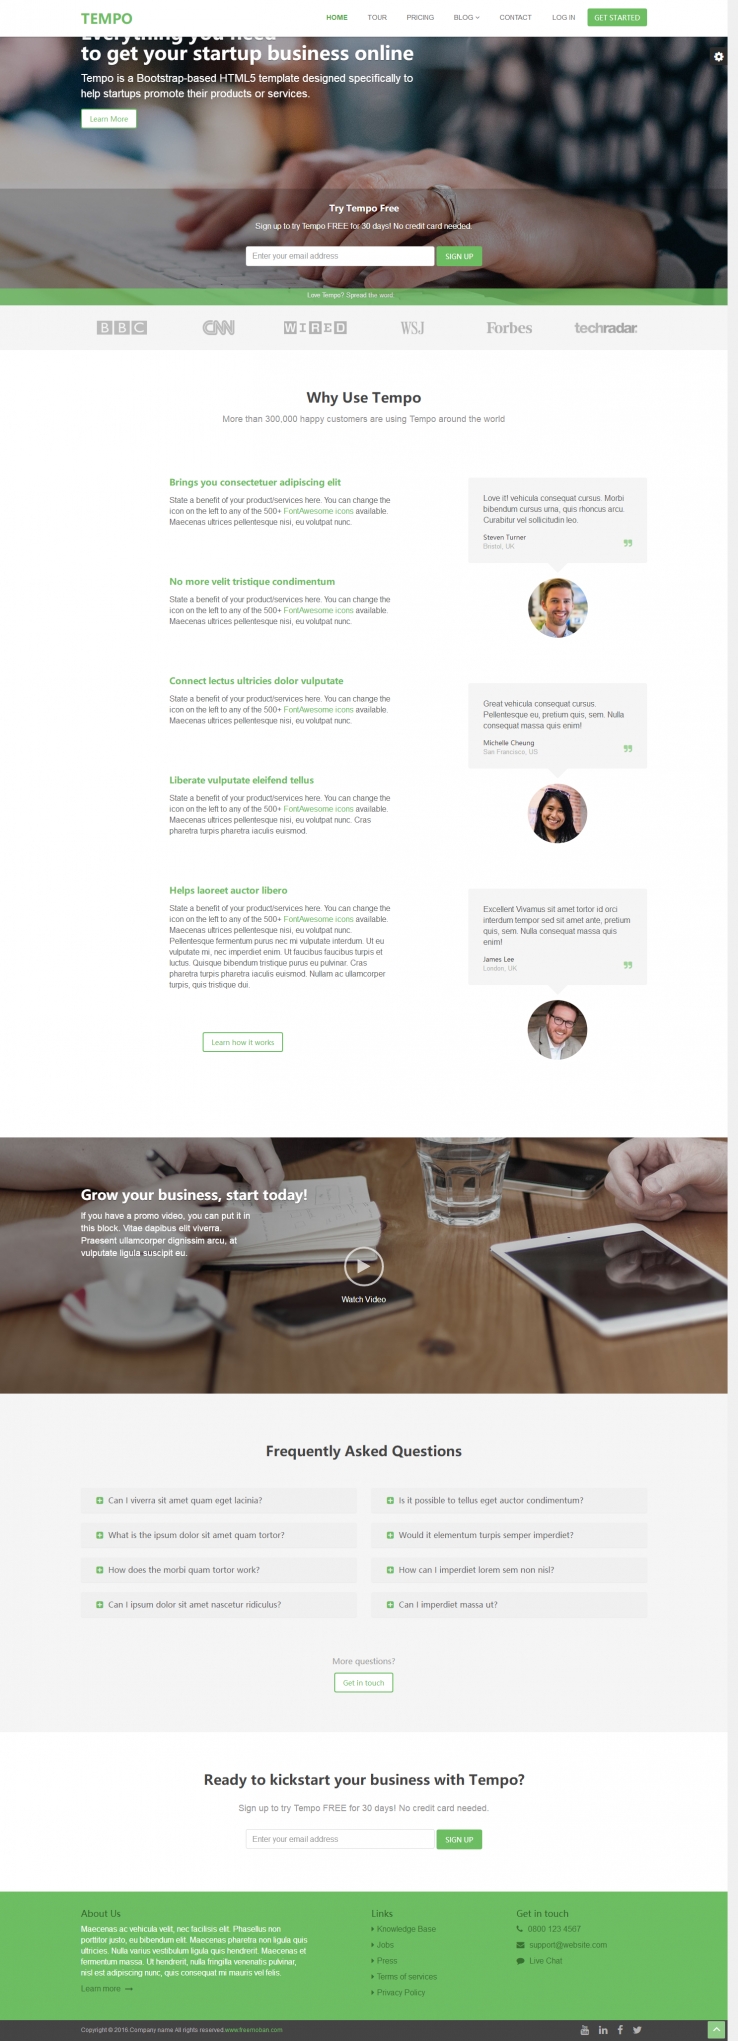 绿色大气风格的响应式企业网站商务模板